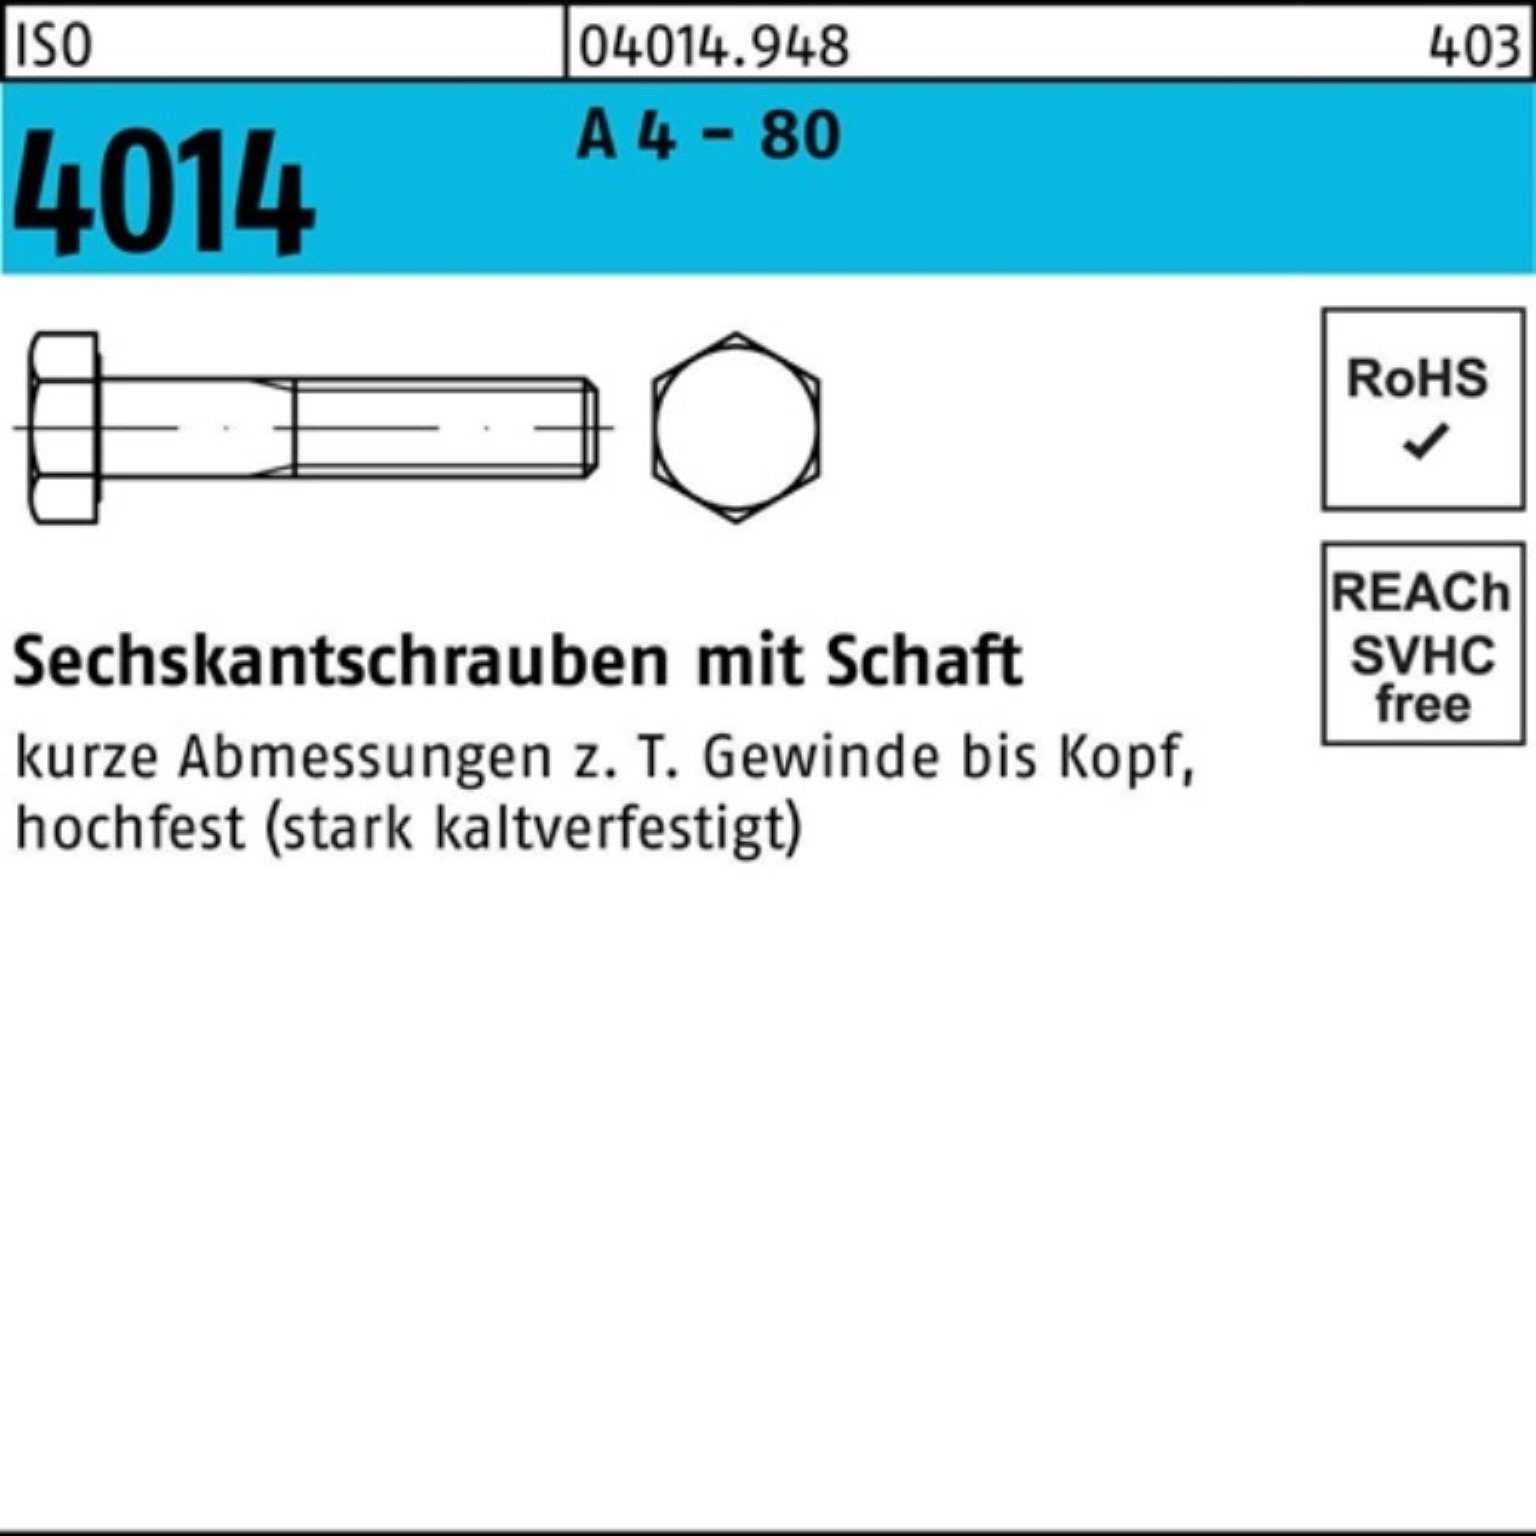 80 - Stüc M20x 1 4014 A Sechskantschraube 100er 180 4 ISO Sechskantschraube Schaft Bufab Pack